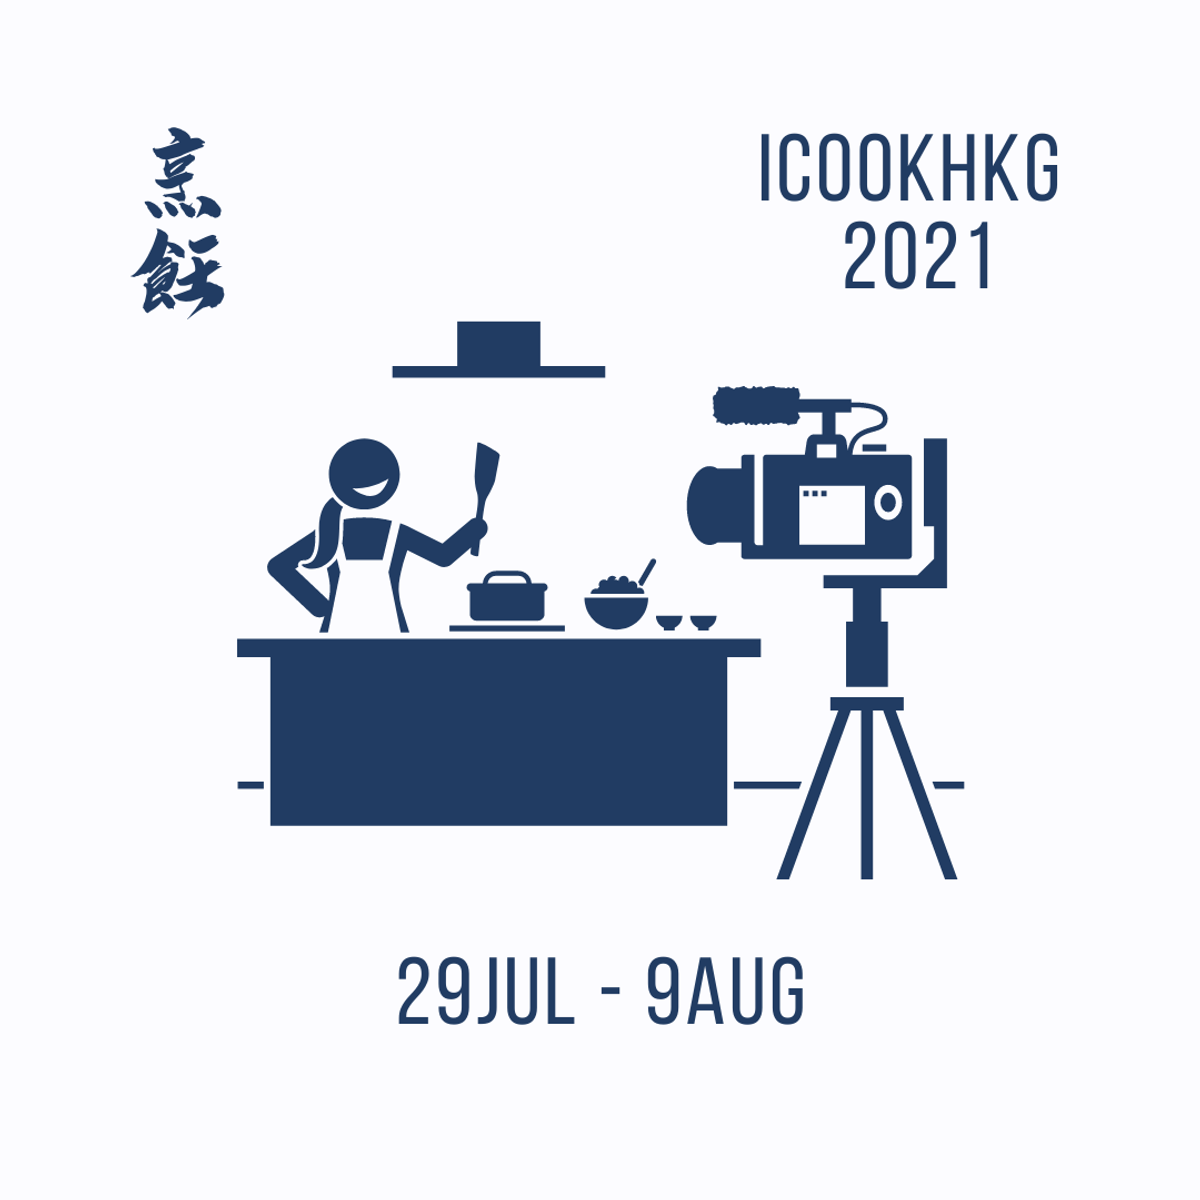 iCookHKG 奧運活動巡禮 2021